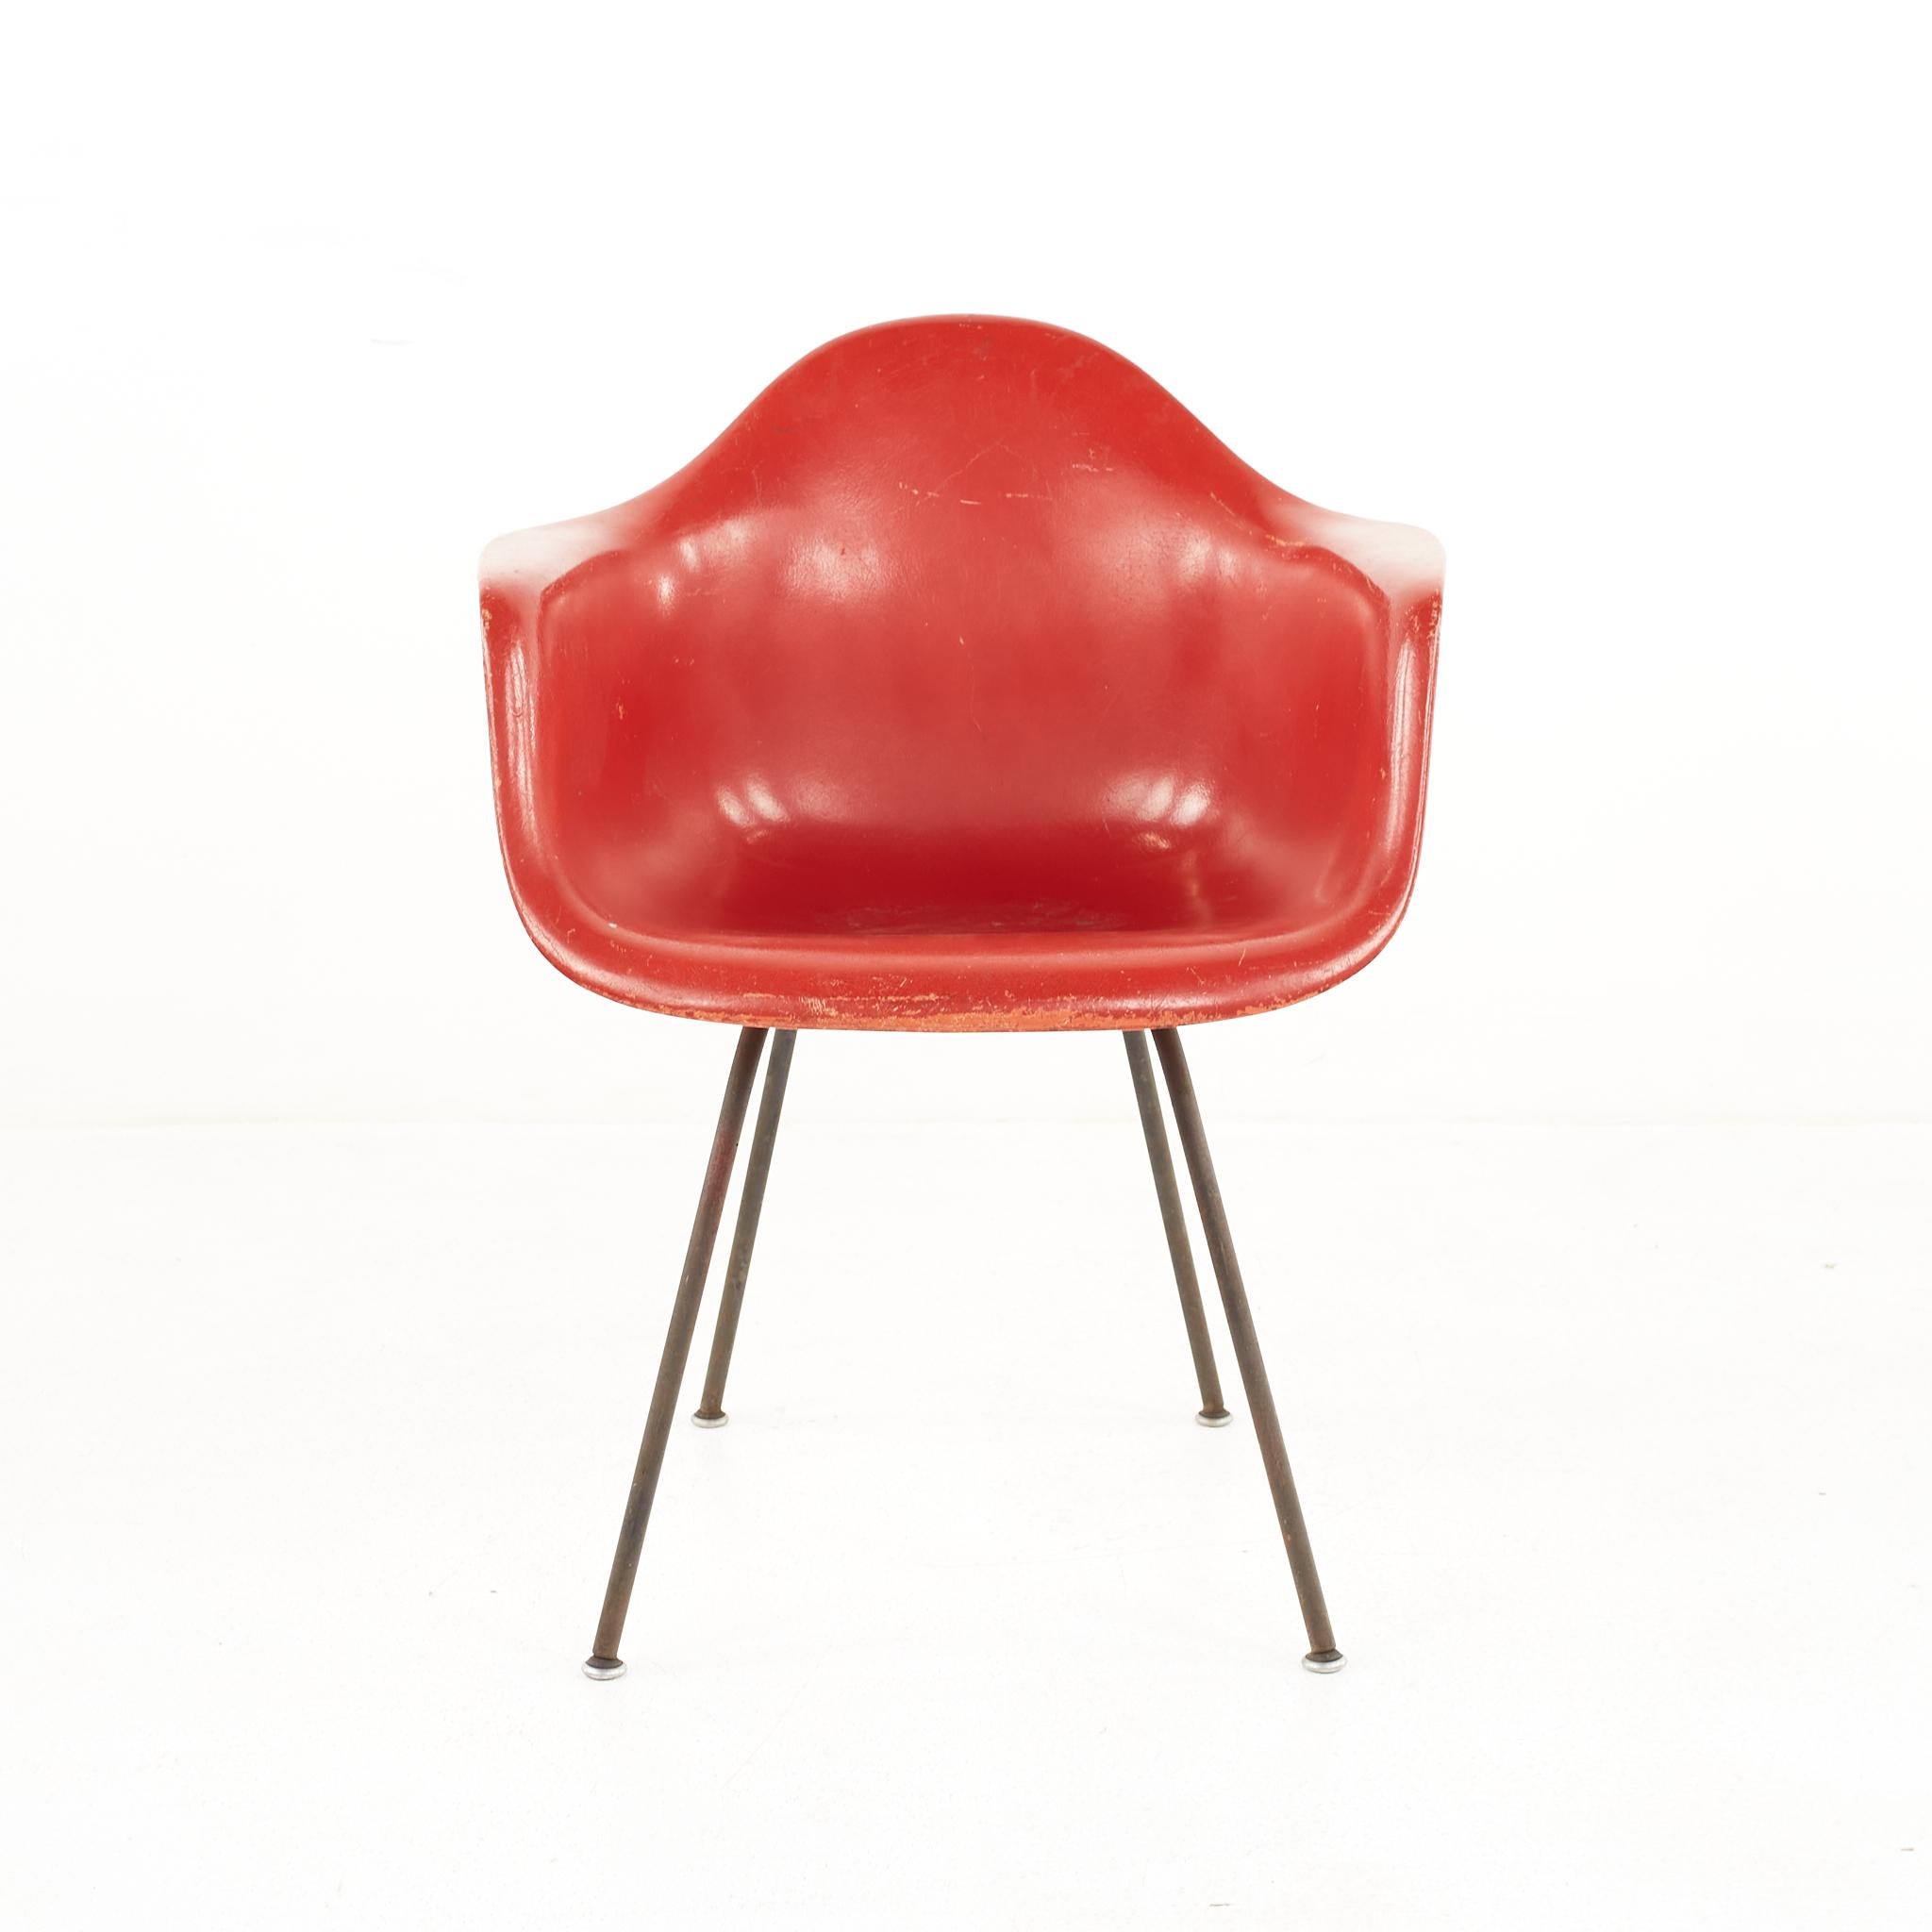 Eames For Herman Miller Mid Century Fiberglass Shell Red Chair (Chaise rouge en fibre de verre)

La chaise mesure : 24,75 de large x 22 de profond x 31,25 de haut, avec une hauteur d'assise de 18 pouces et une hauteur d'accoudoir de 26 pouces.